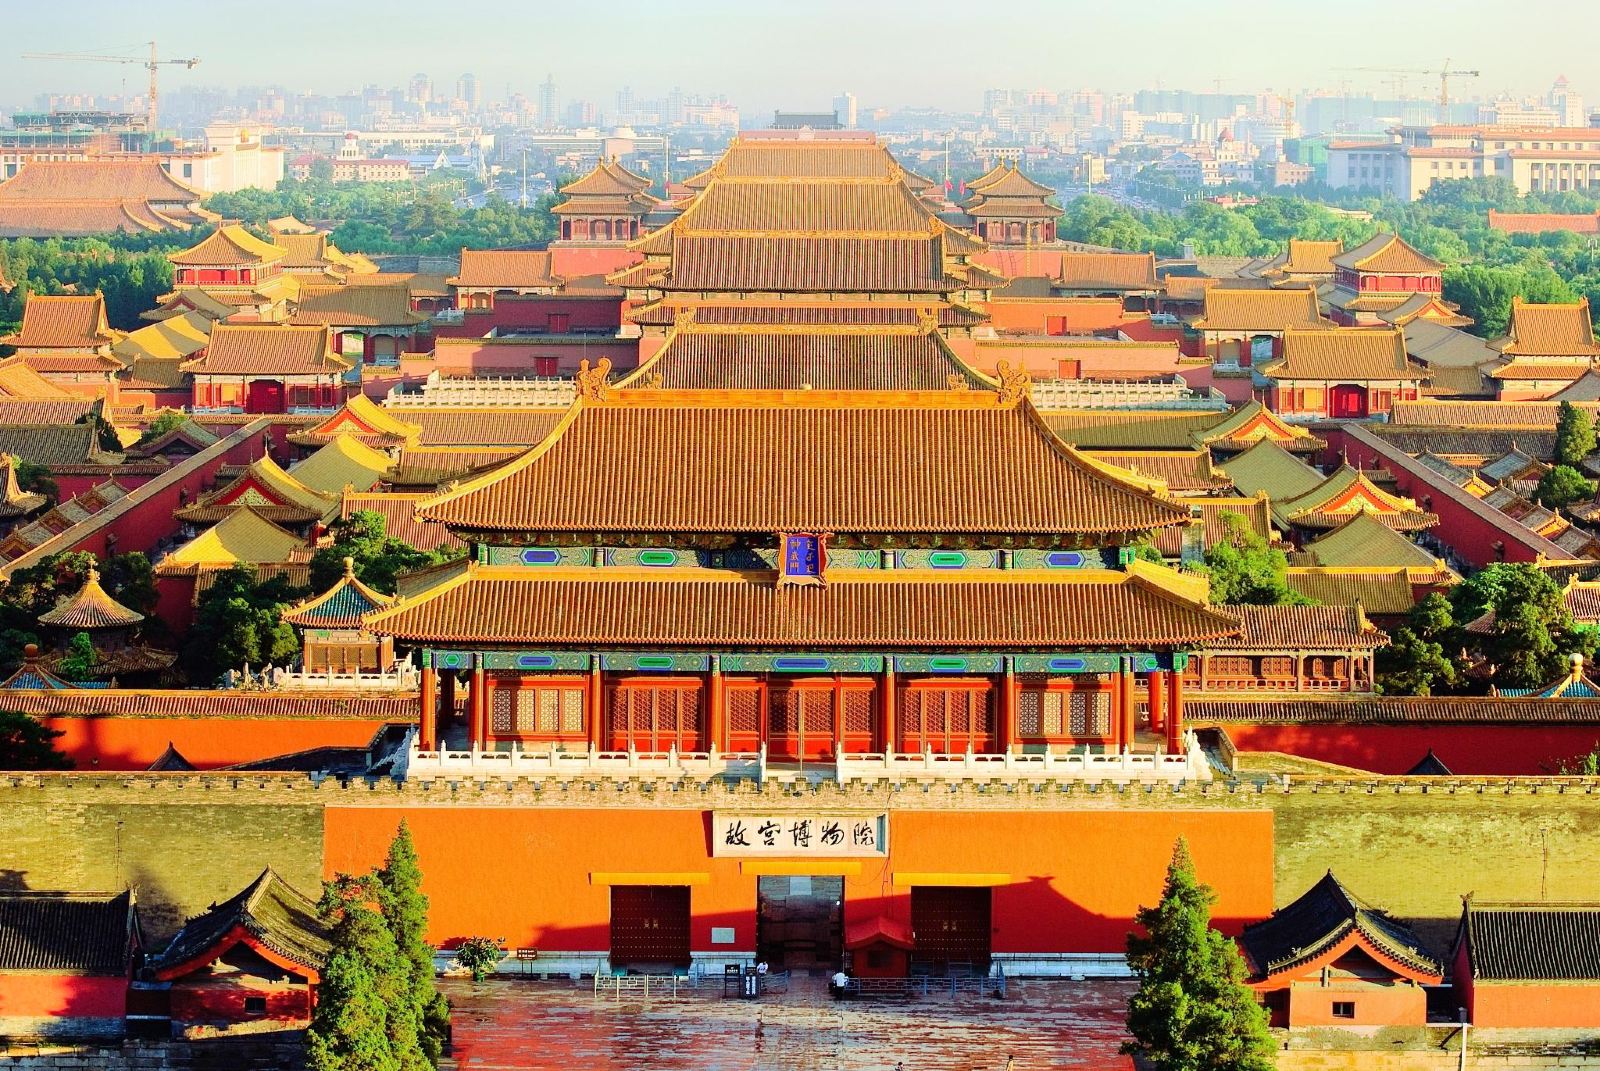 自驾游北京 | 京郊自驾游路线推荐 20条精品任你选